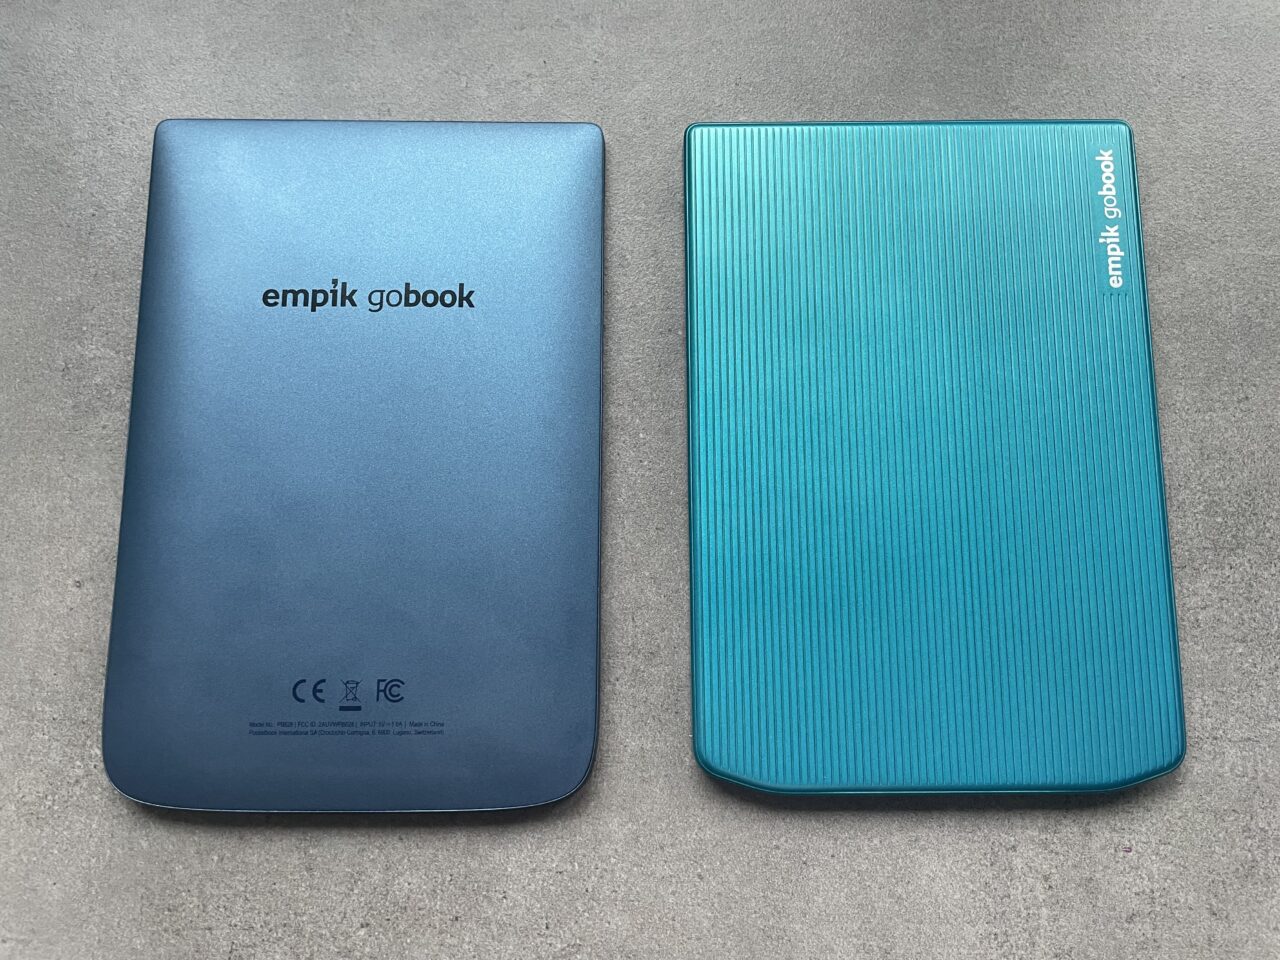 Dwa zamknięte czytniki ebooków leżące obok siebie na szarym tle; lewy w kolorze gradientu od granatu do błękitu z napisem "empik gobook", prawy w błękitnym kolorze z poziomymi żłobieniami i białym napisem "empik gobook" po boku.